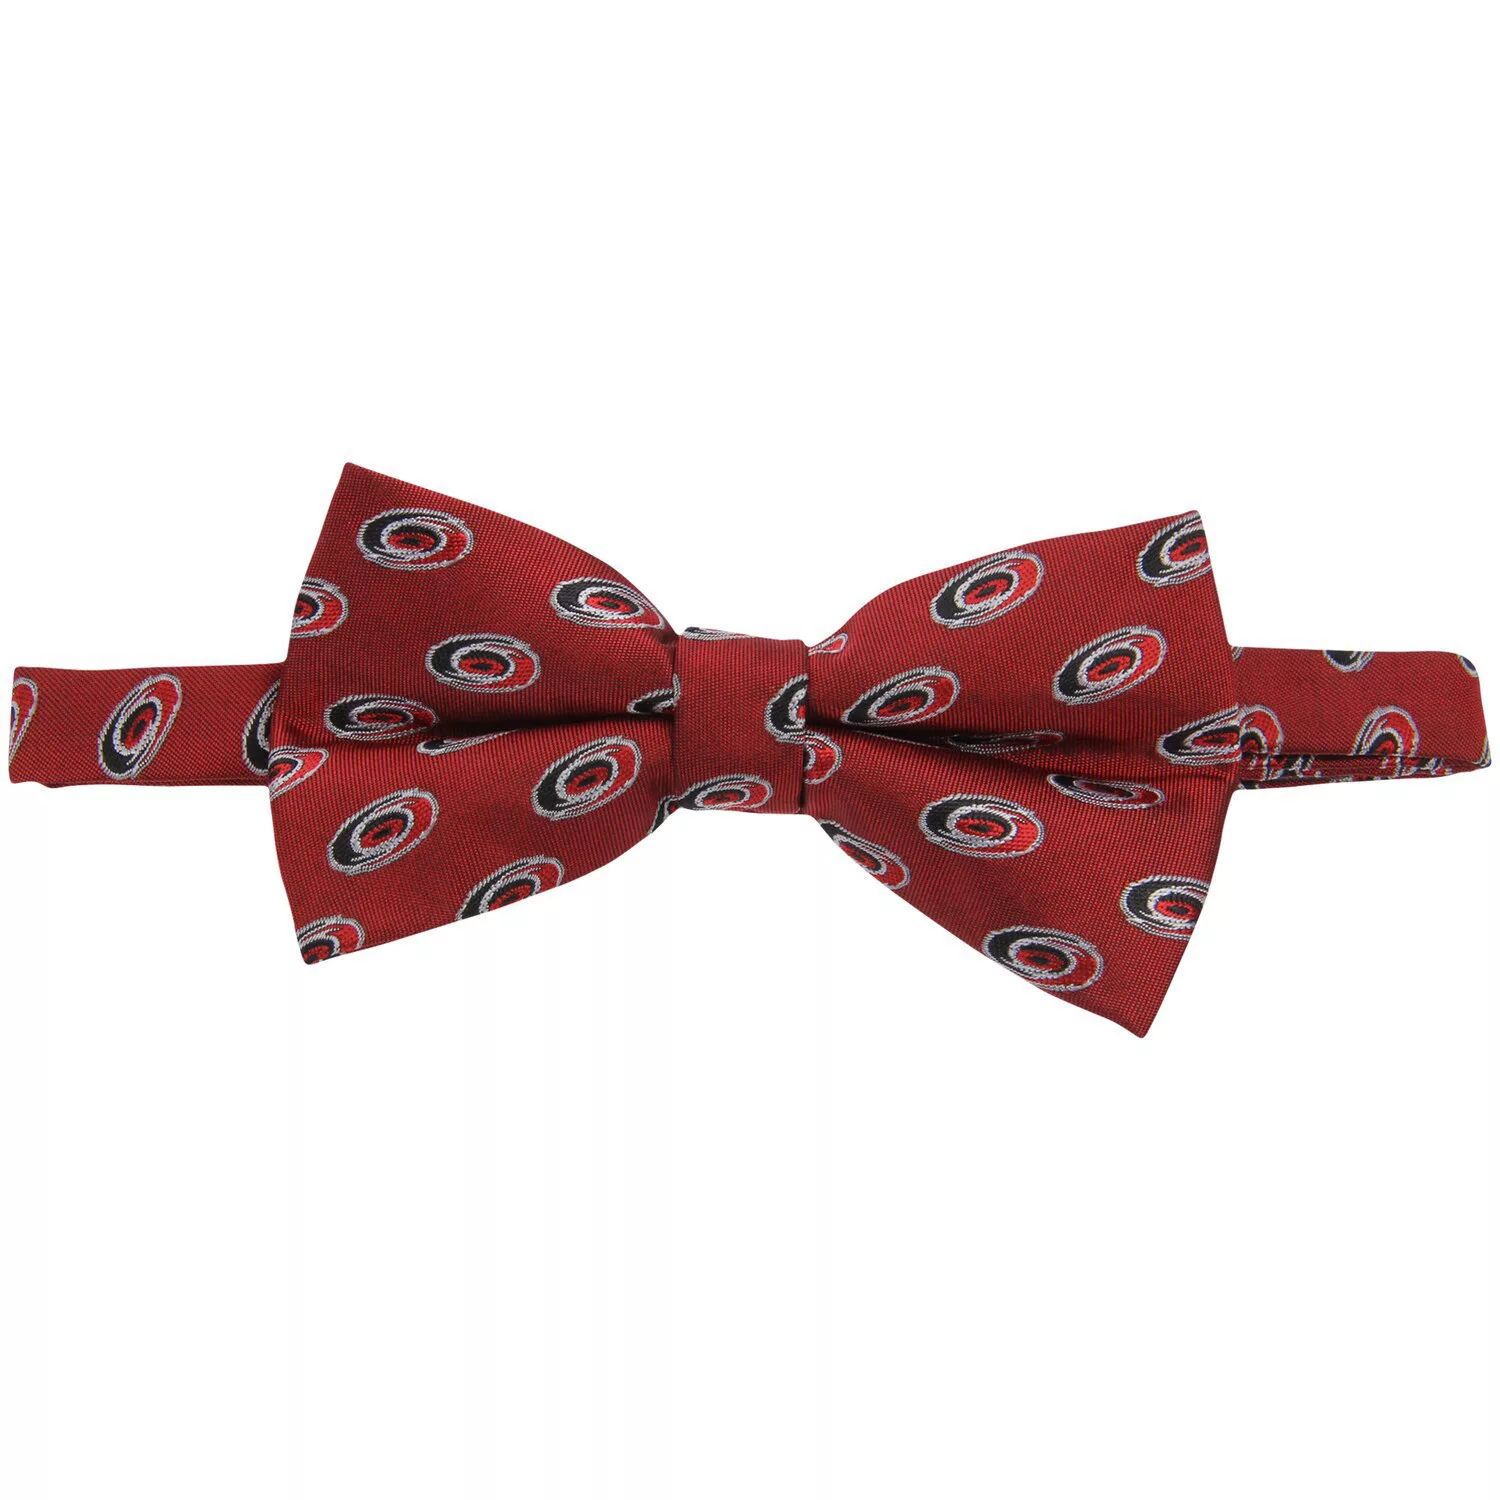 Мужской красный галстук-бабочка Carolina Hurricanes с повторением